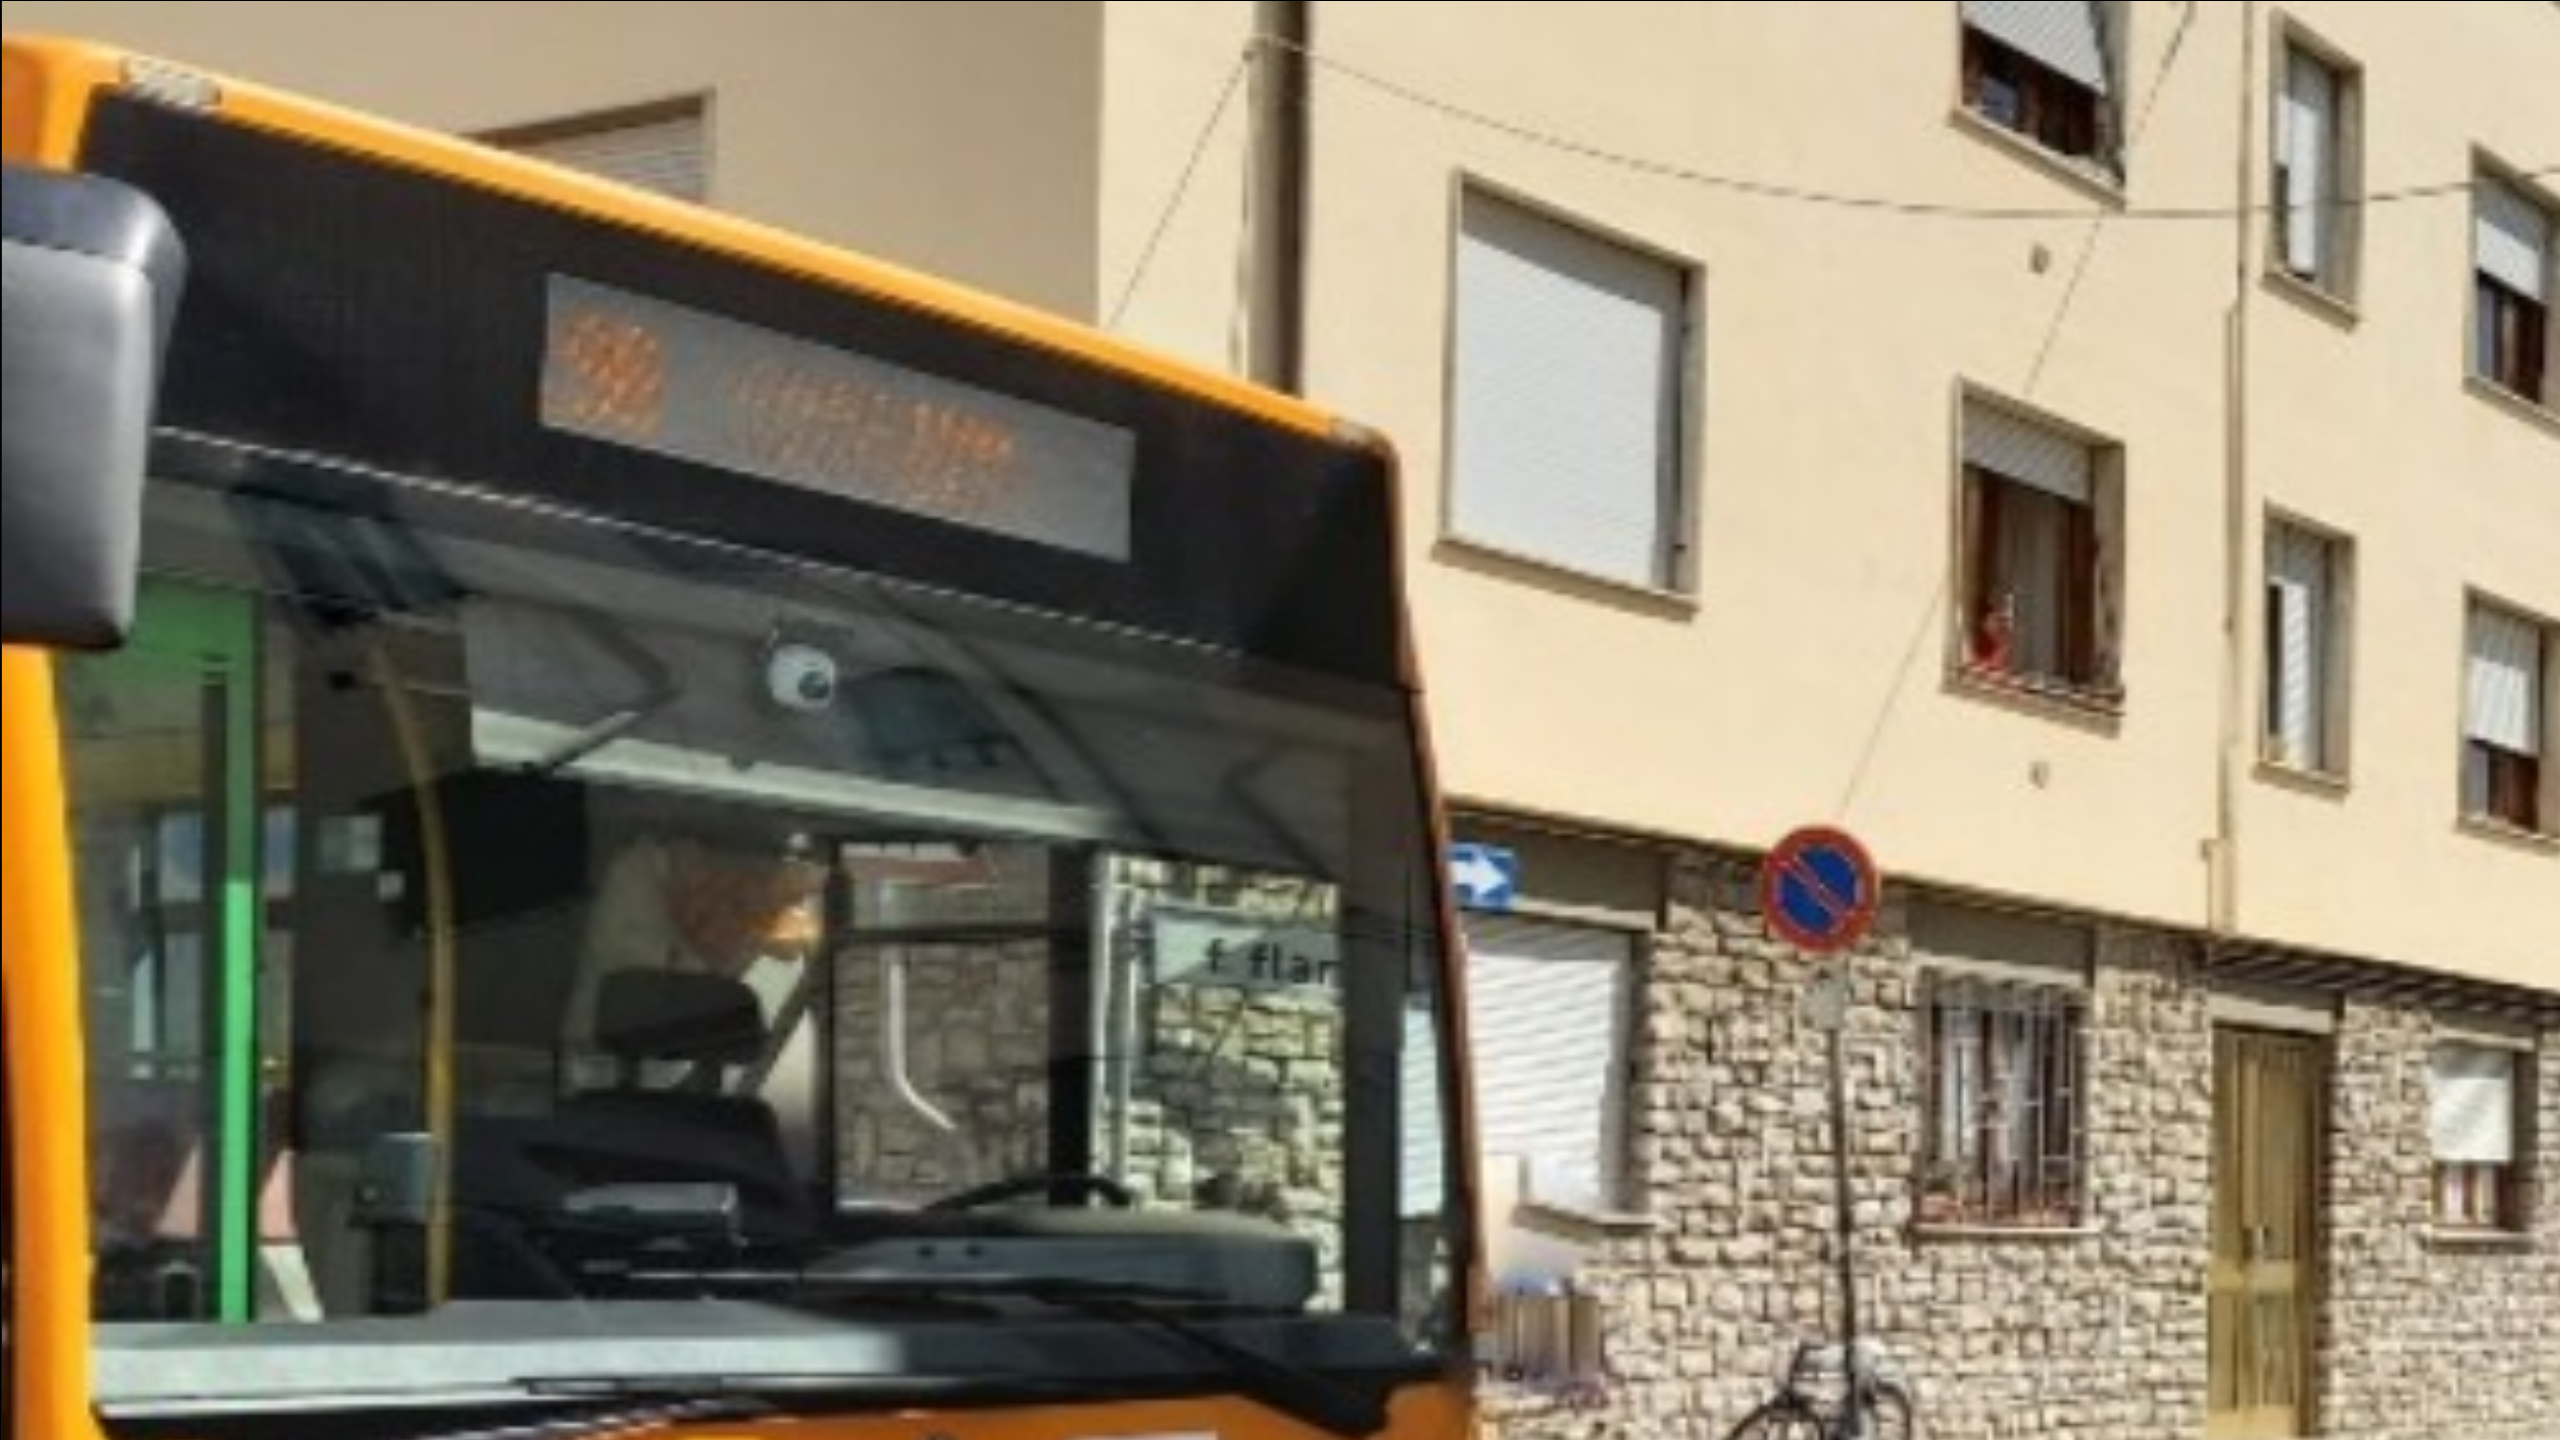 La sosta selvaggia di un furgone impedisce la corsa dei bus a Pisa, a denunciarlo è At.